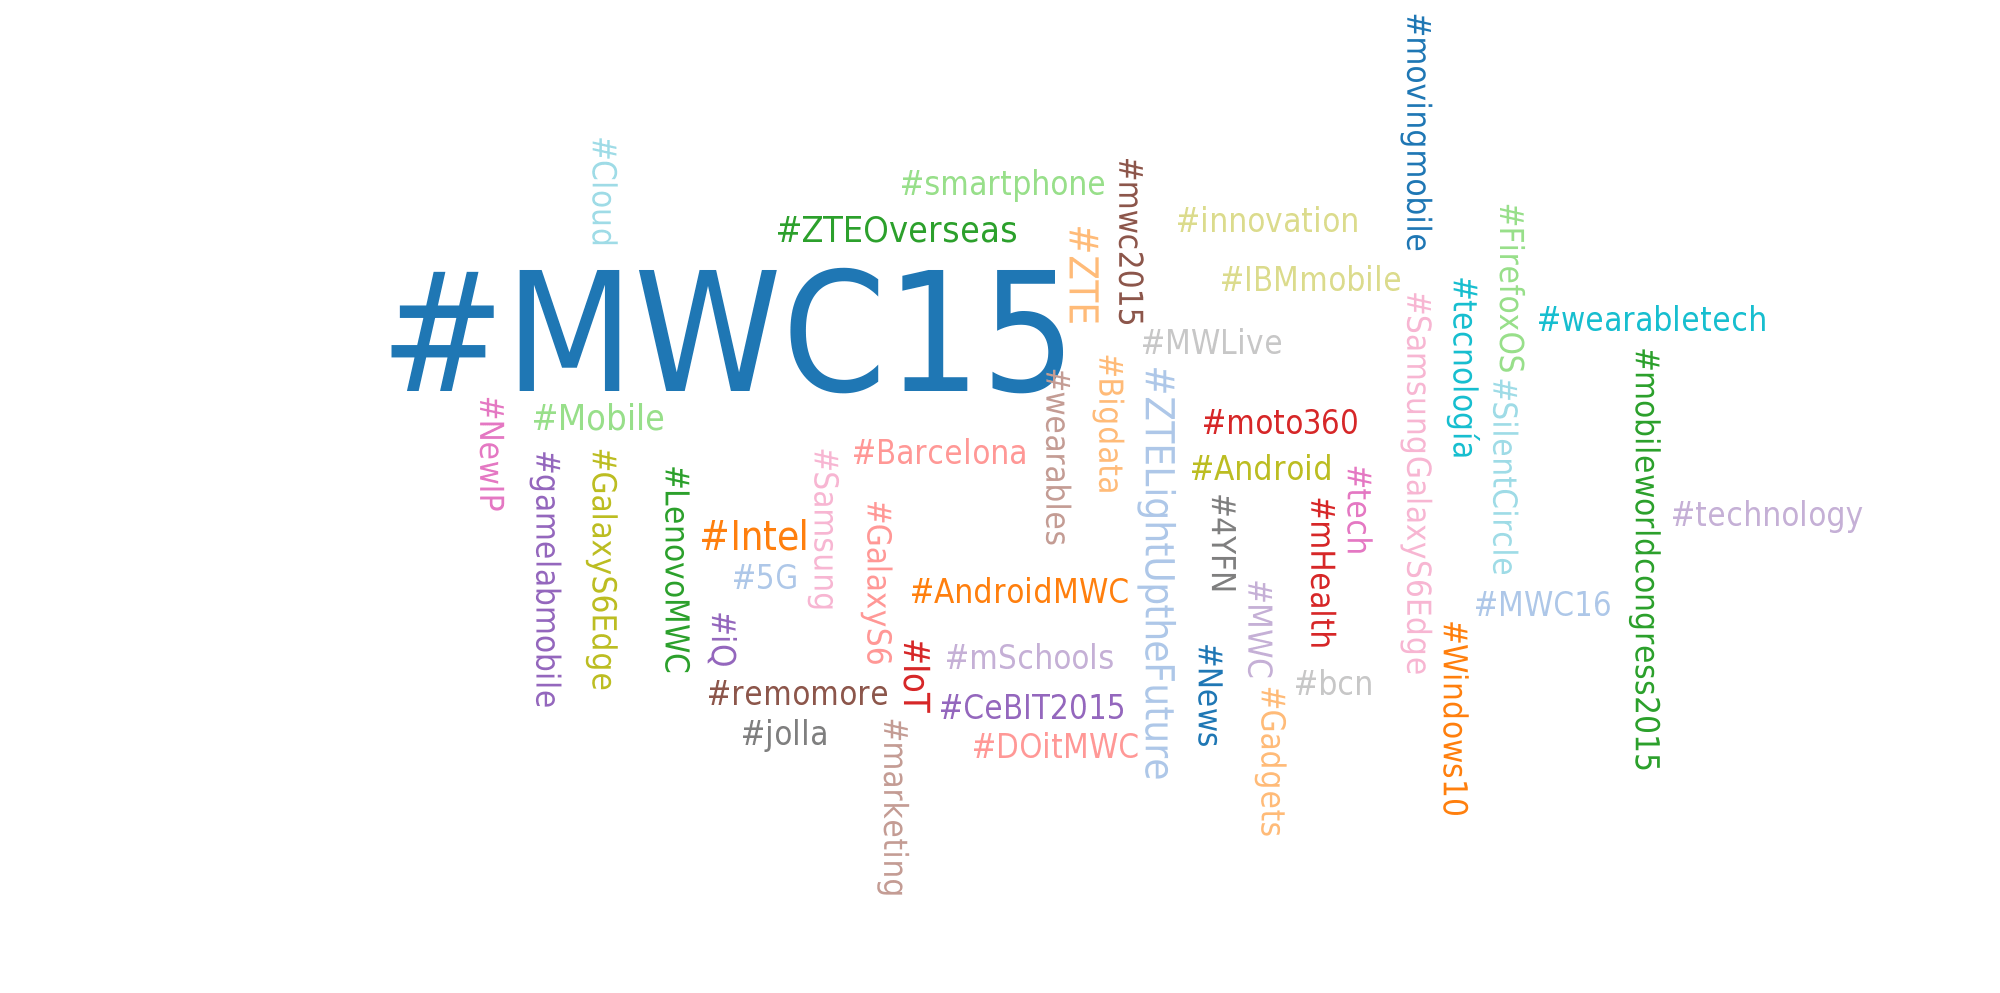 Nube de hashtags del MWC15